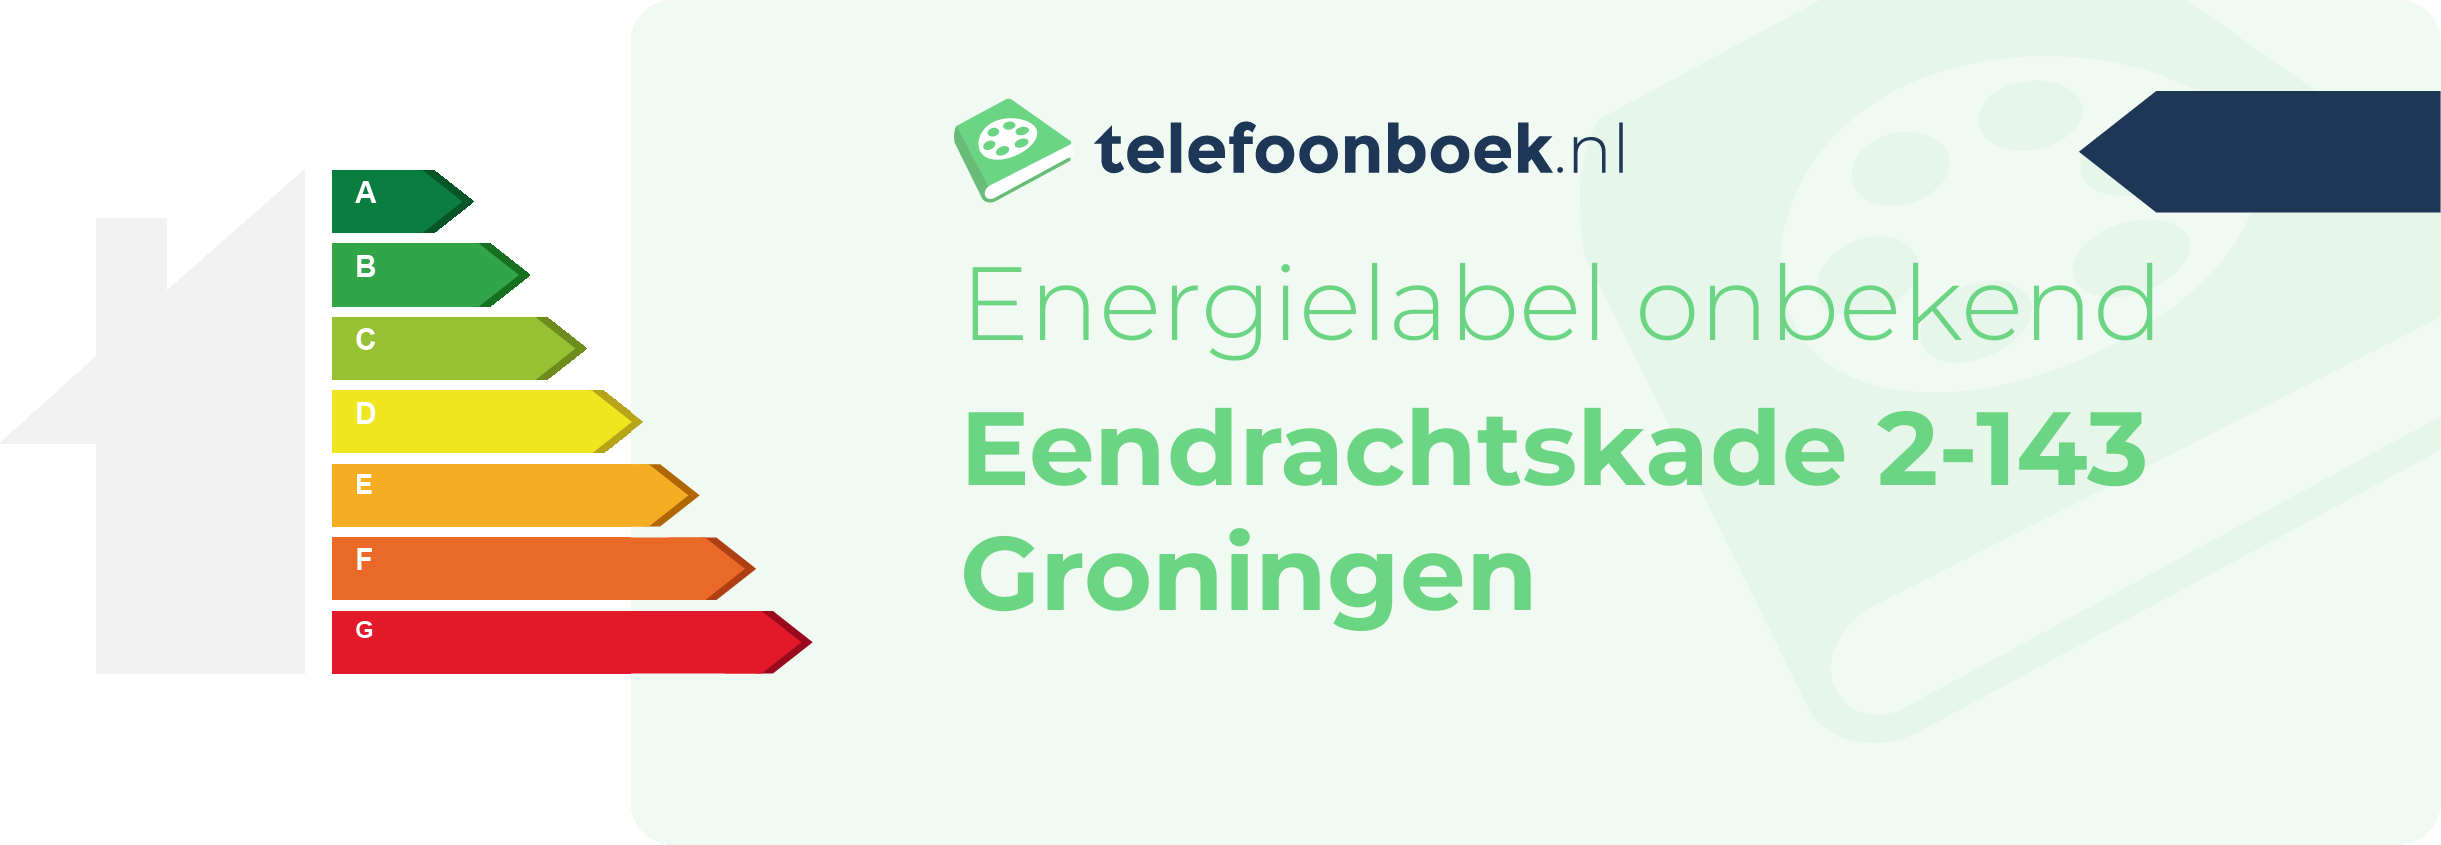 Energielabel Eendrachtskade 2-143 Groningen